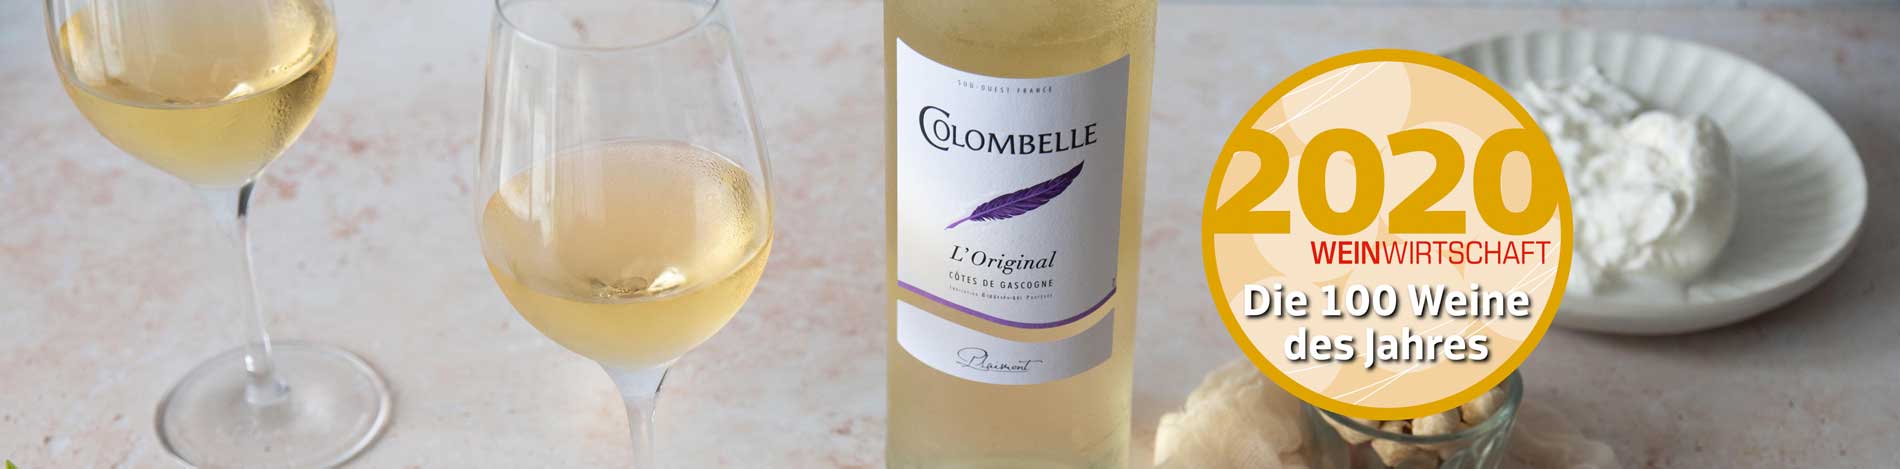 Colombelle L'Original 2019, meilleur vin blanc français 2020 d'après Weinwirtschaft